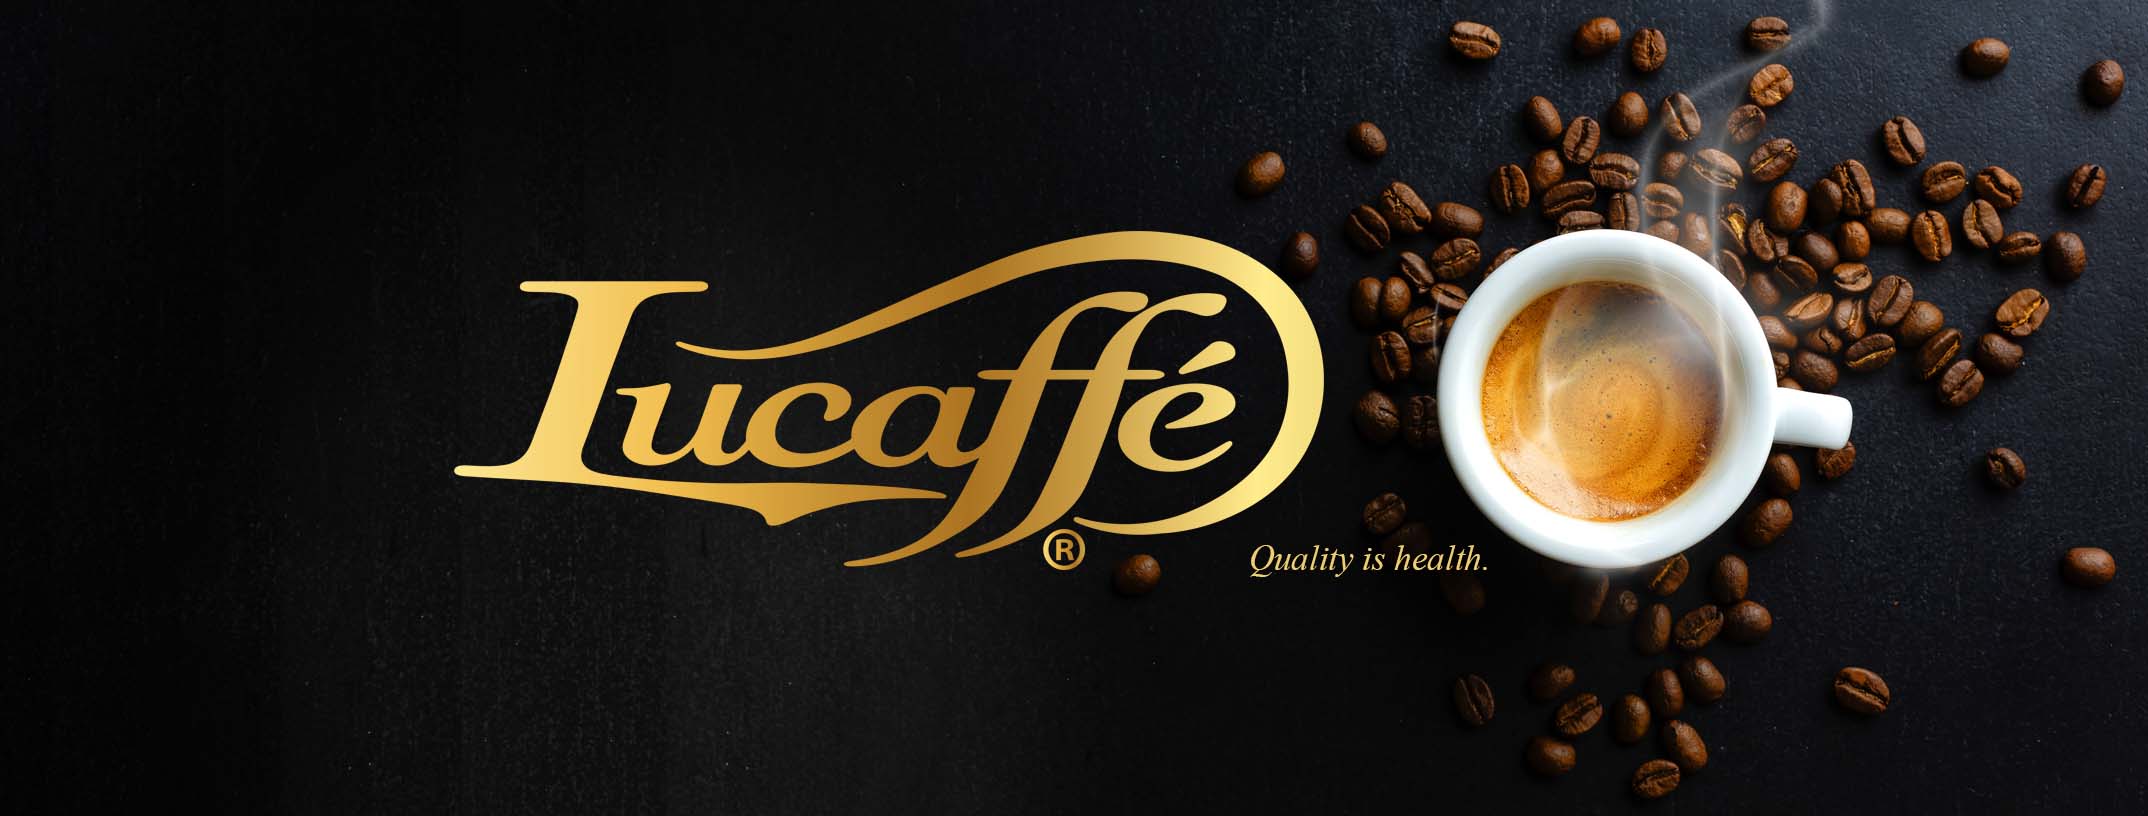 Lucaffé Grains de café Banner